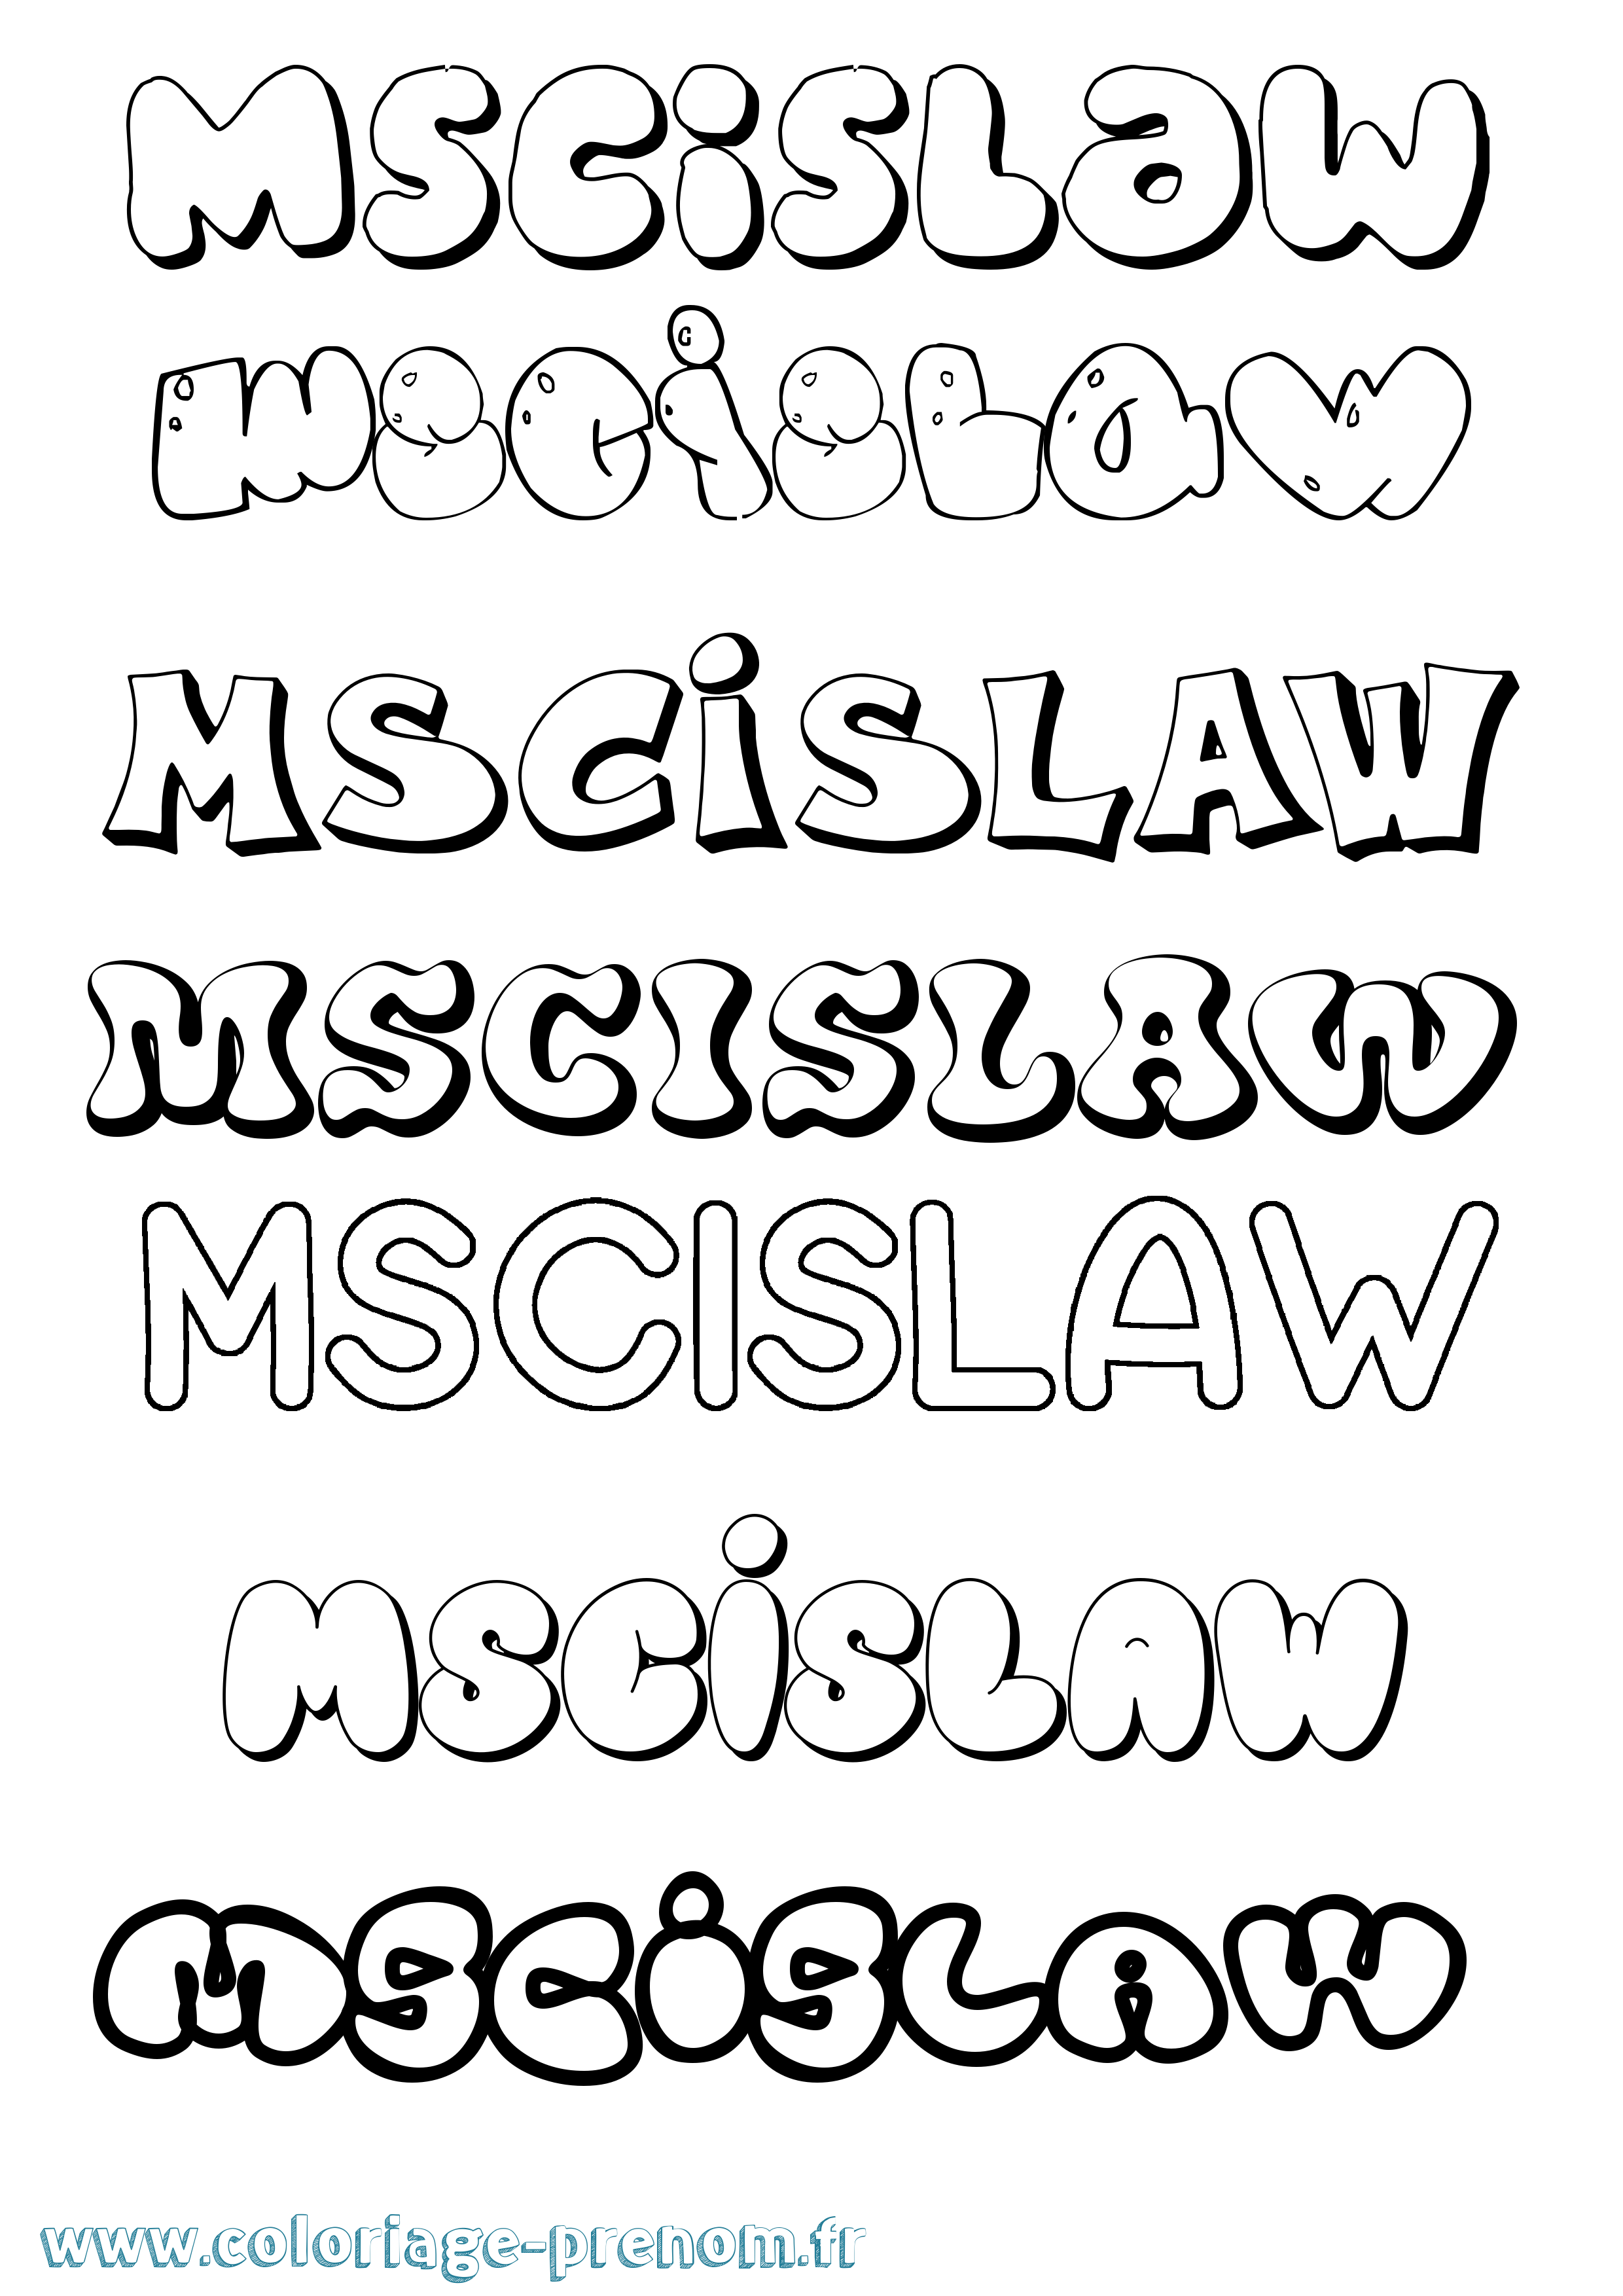 Coloriage prénom Mscislaw Bubble